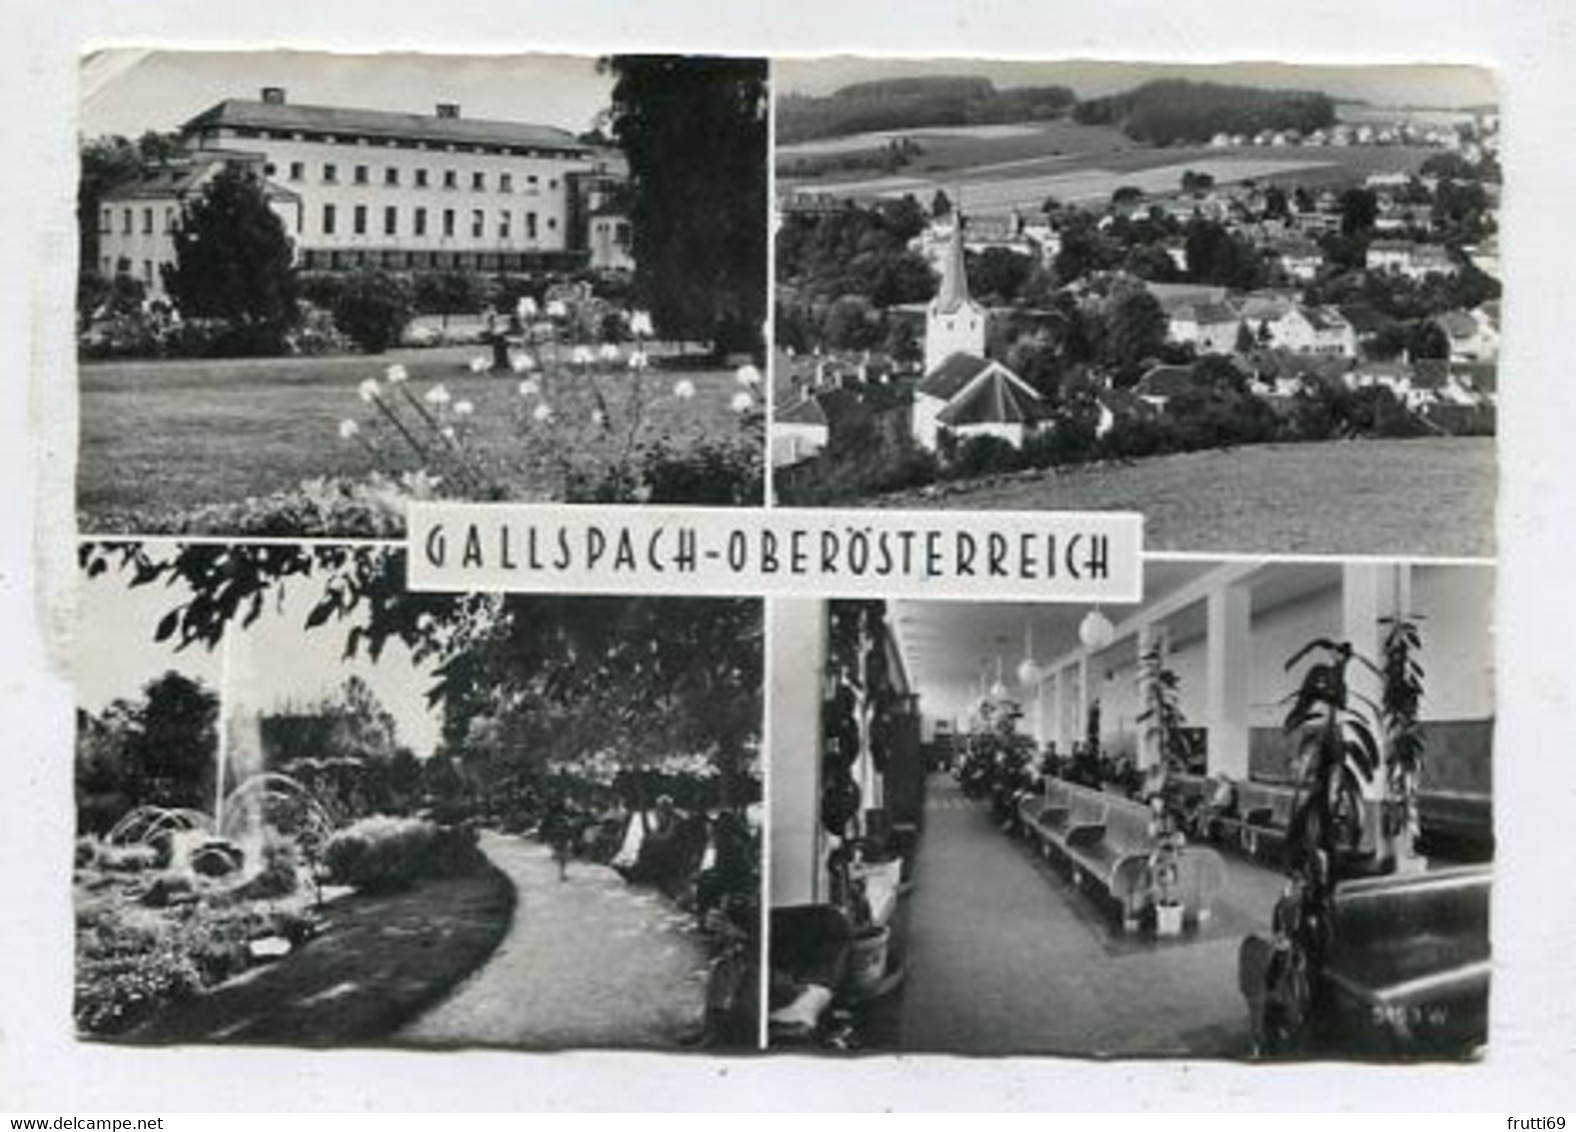 AK 117299 AUSTRIA - Gallspach - Gallspach